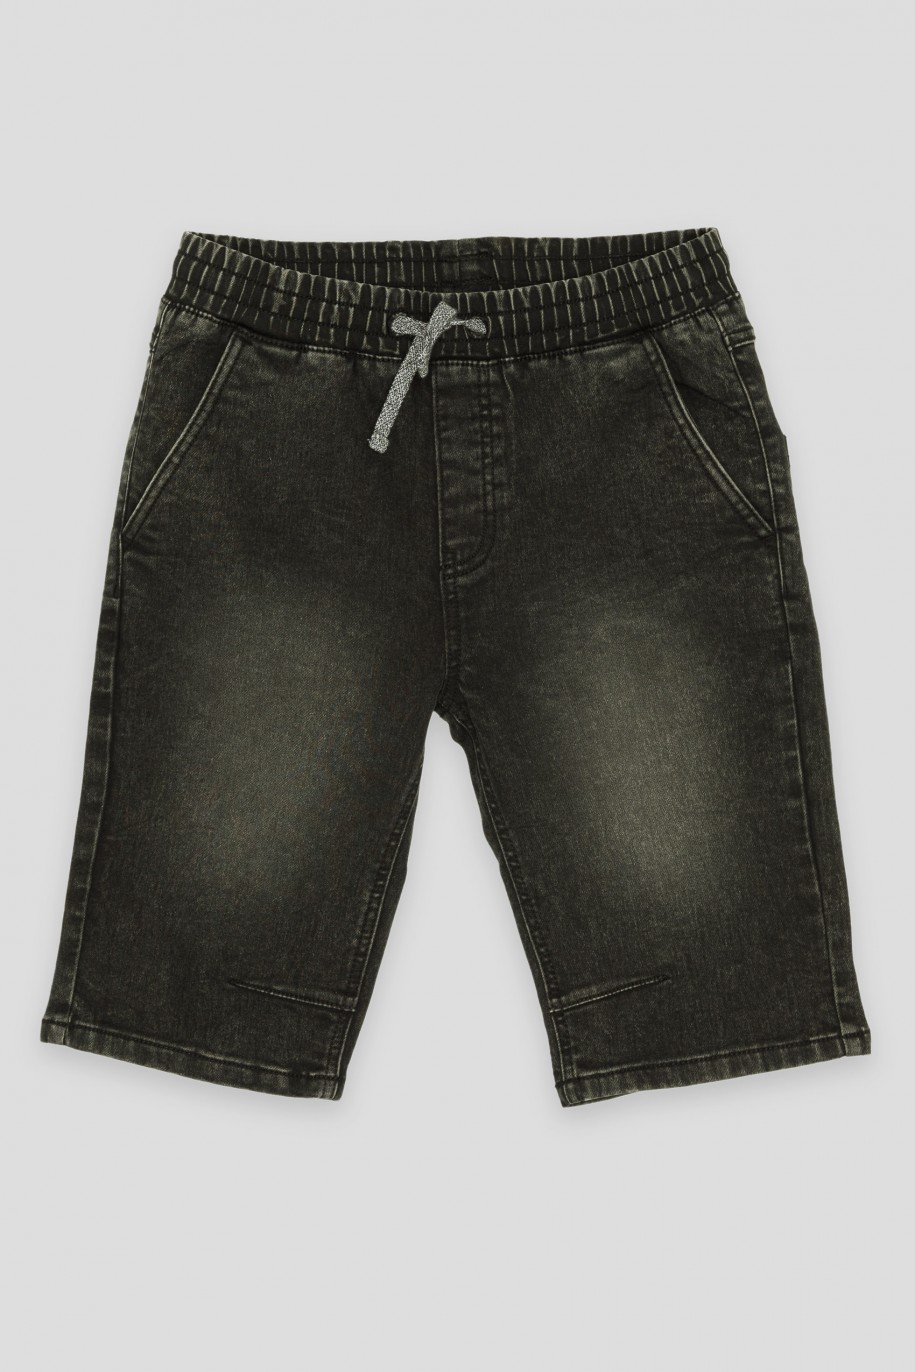 Szare krótkie jeansowe spodenki na gumce - 42520